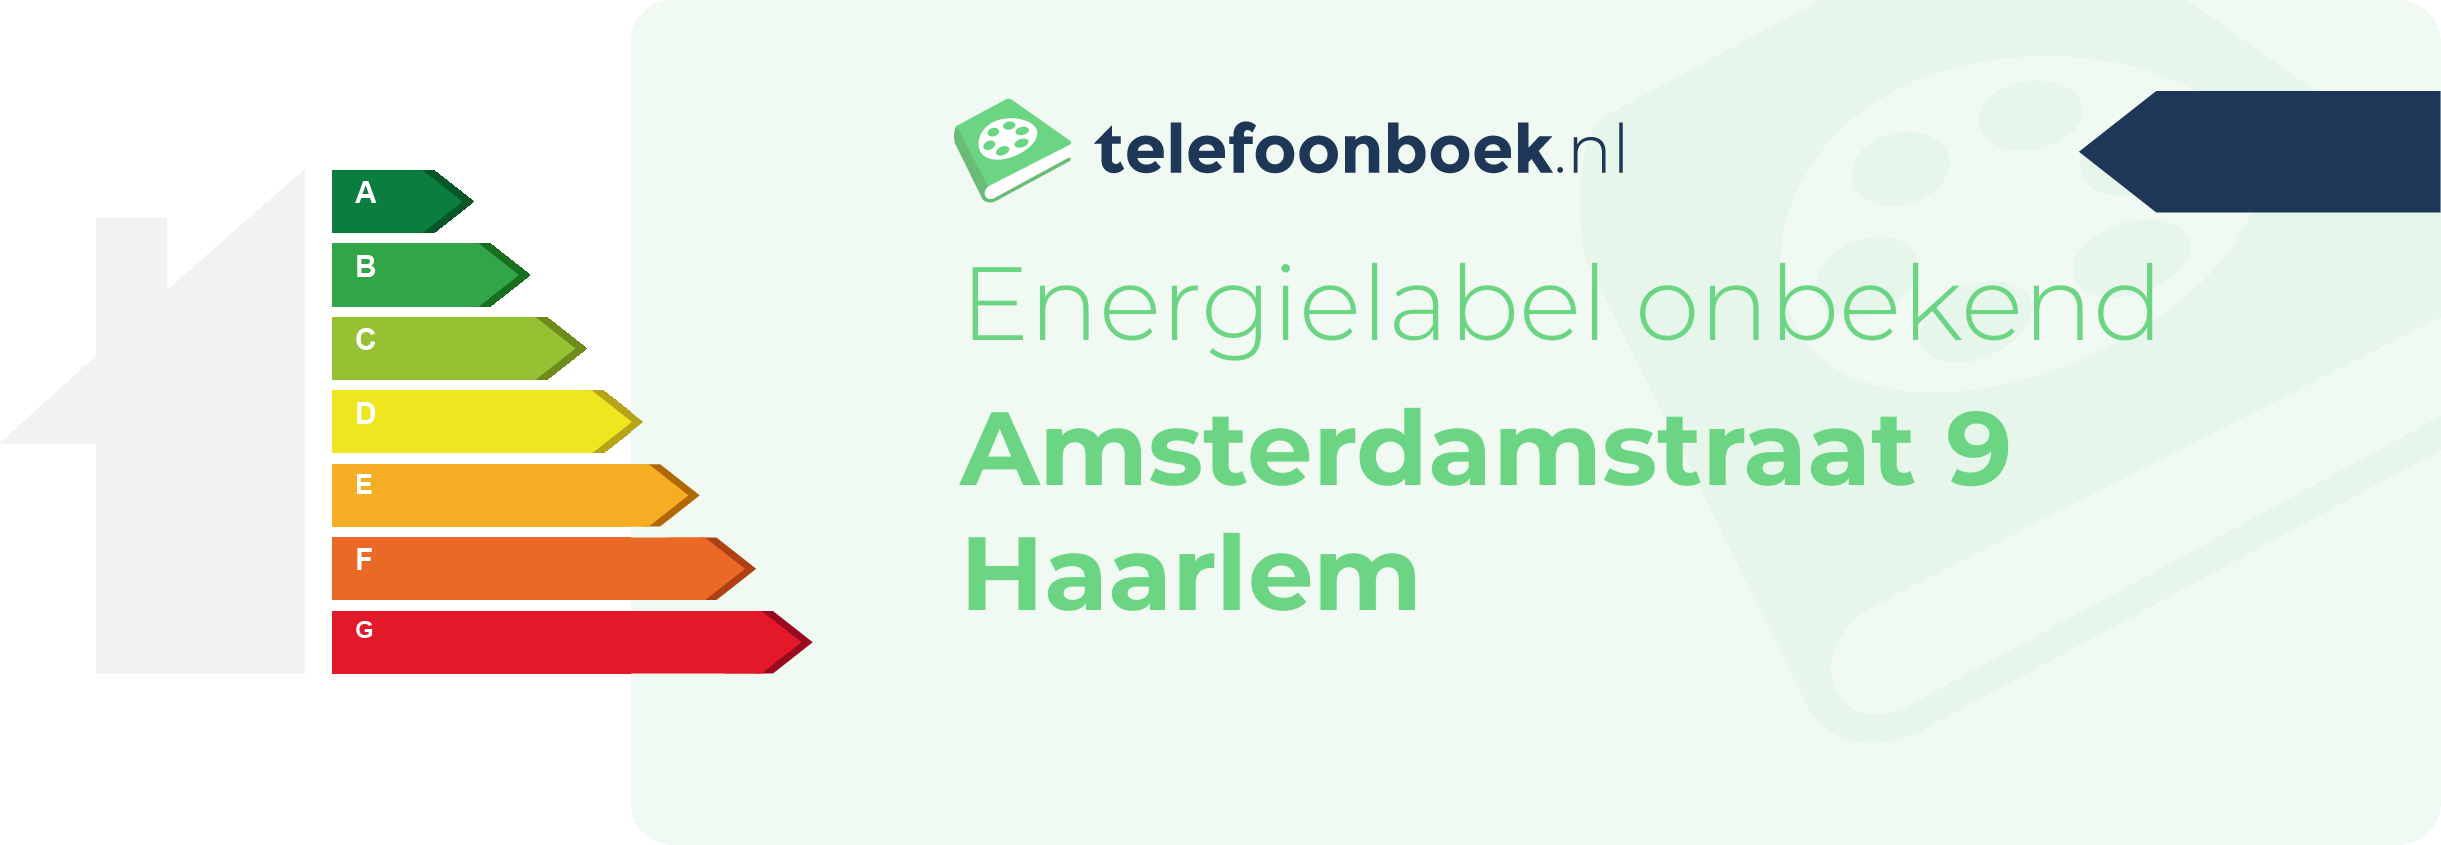 Energielabel Amsterdamstraat 9 Haarlem